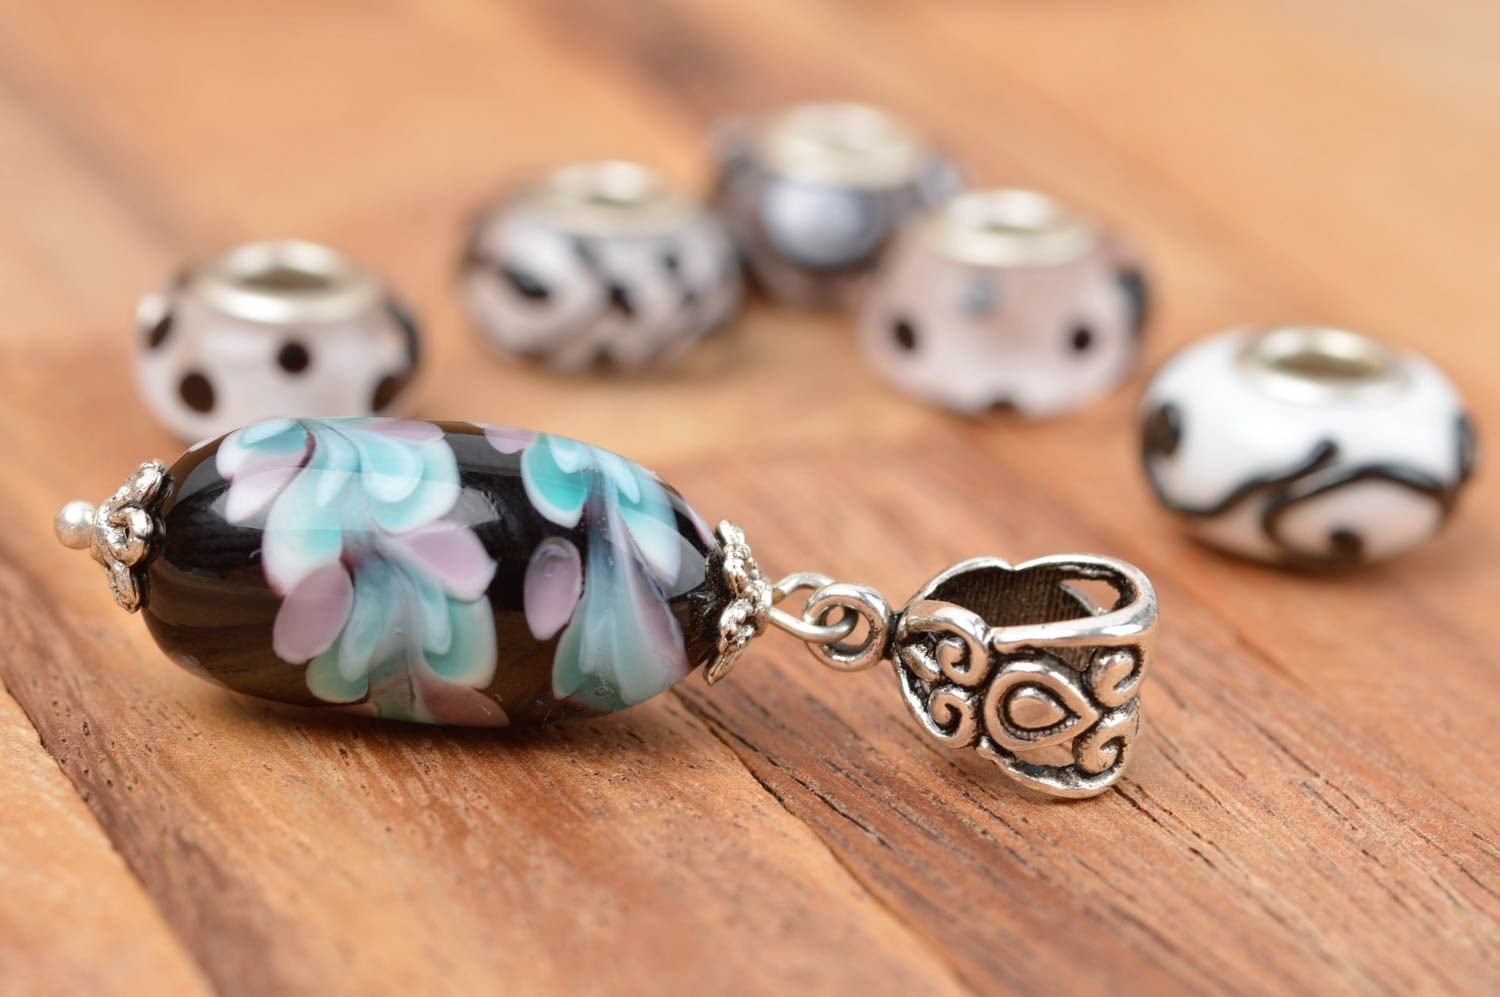 Handmade elegant glass pendant designer female pendant cute gift for her photo 1